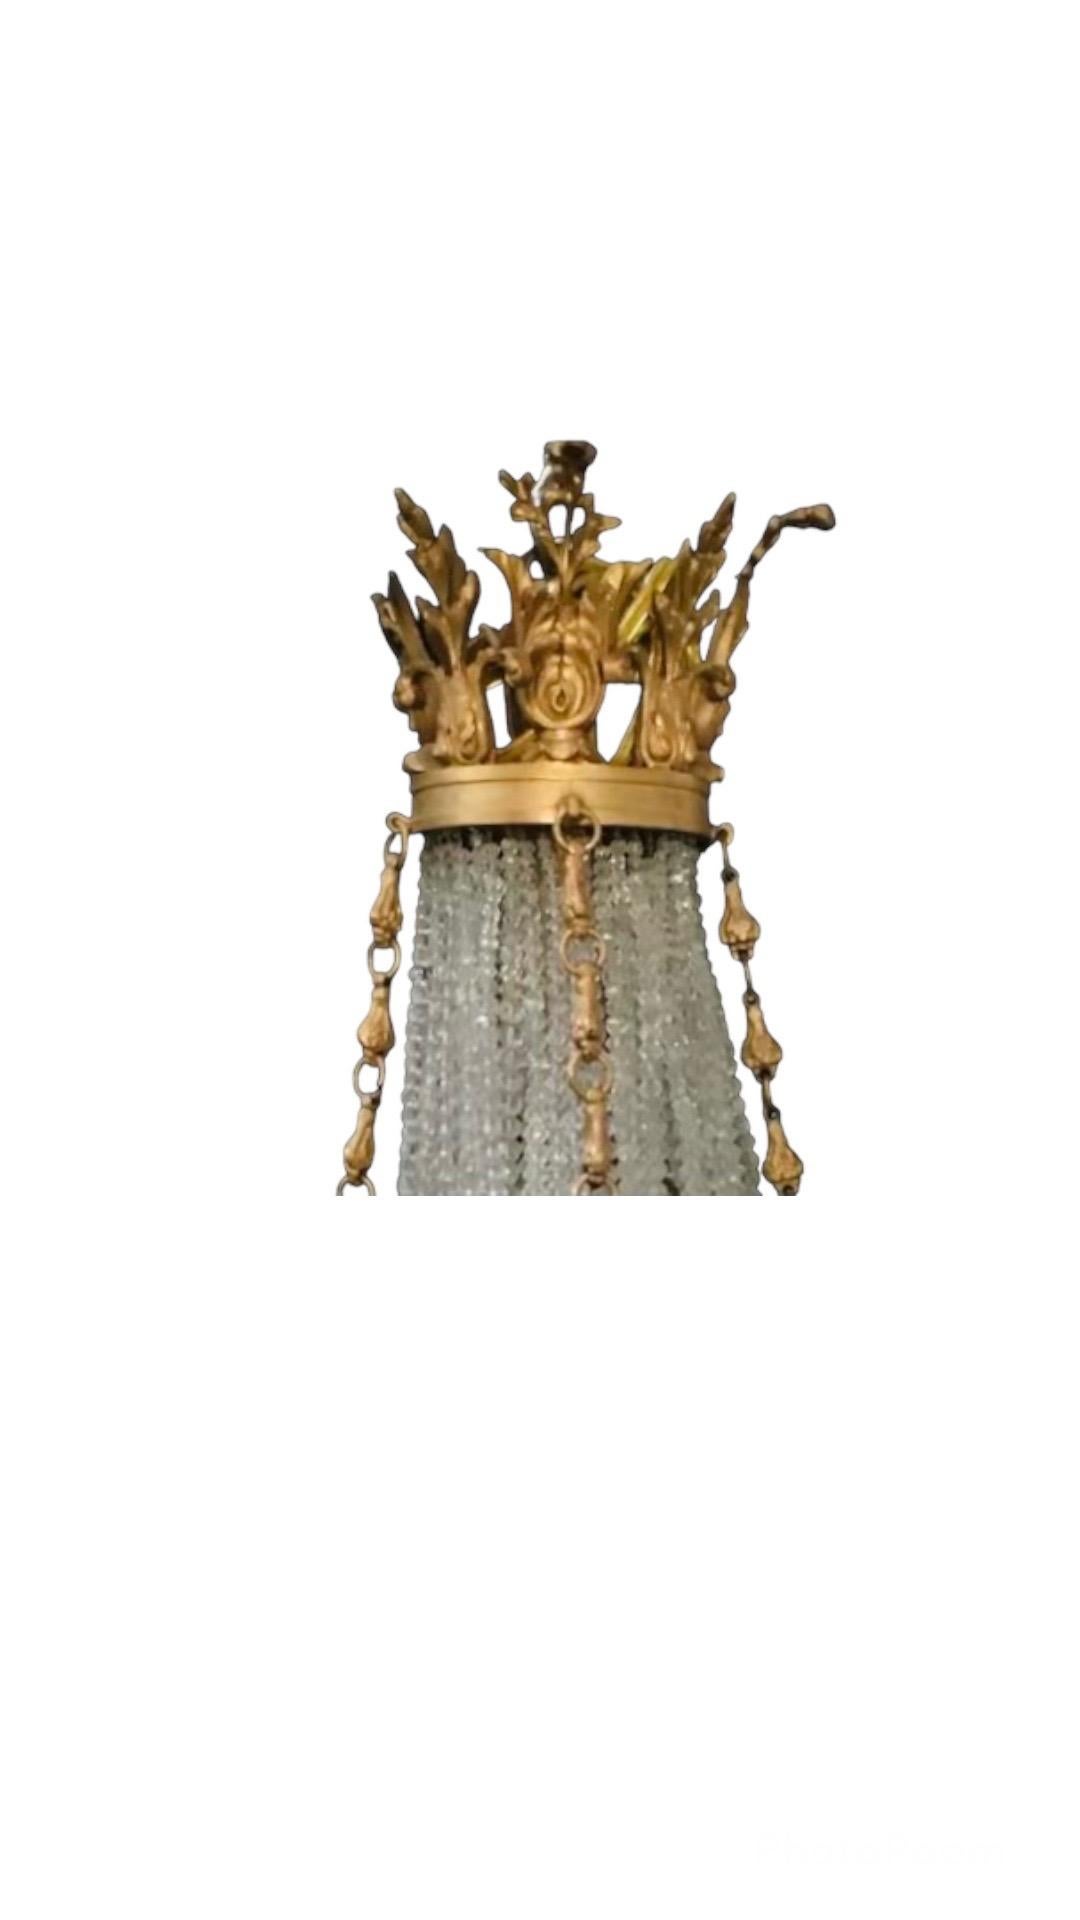 Ce magnifique petit lustre est drapé de cristaux clairs et givrés se terminant par une couronne en bronze Dore. Détails en bronze comprenant des feuilles, des fleurs et des rubans. 

Nombre de lumières : 9